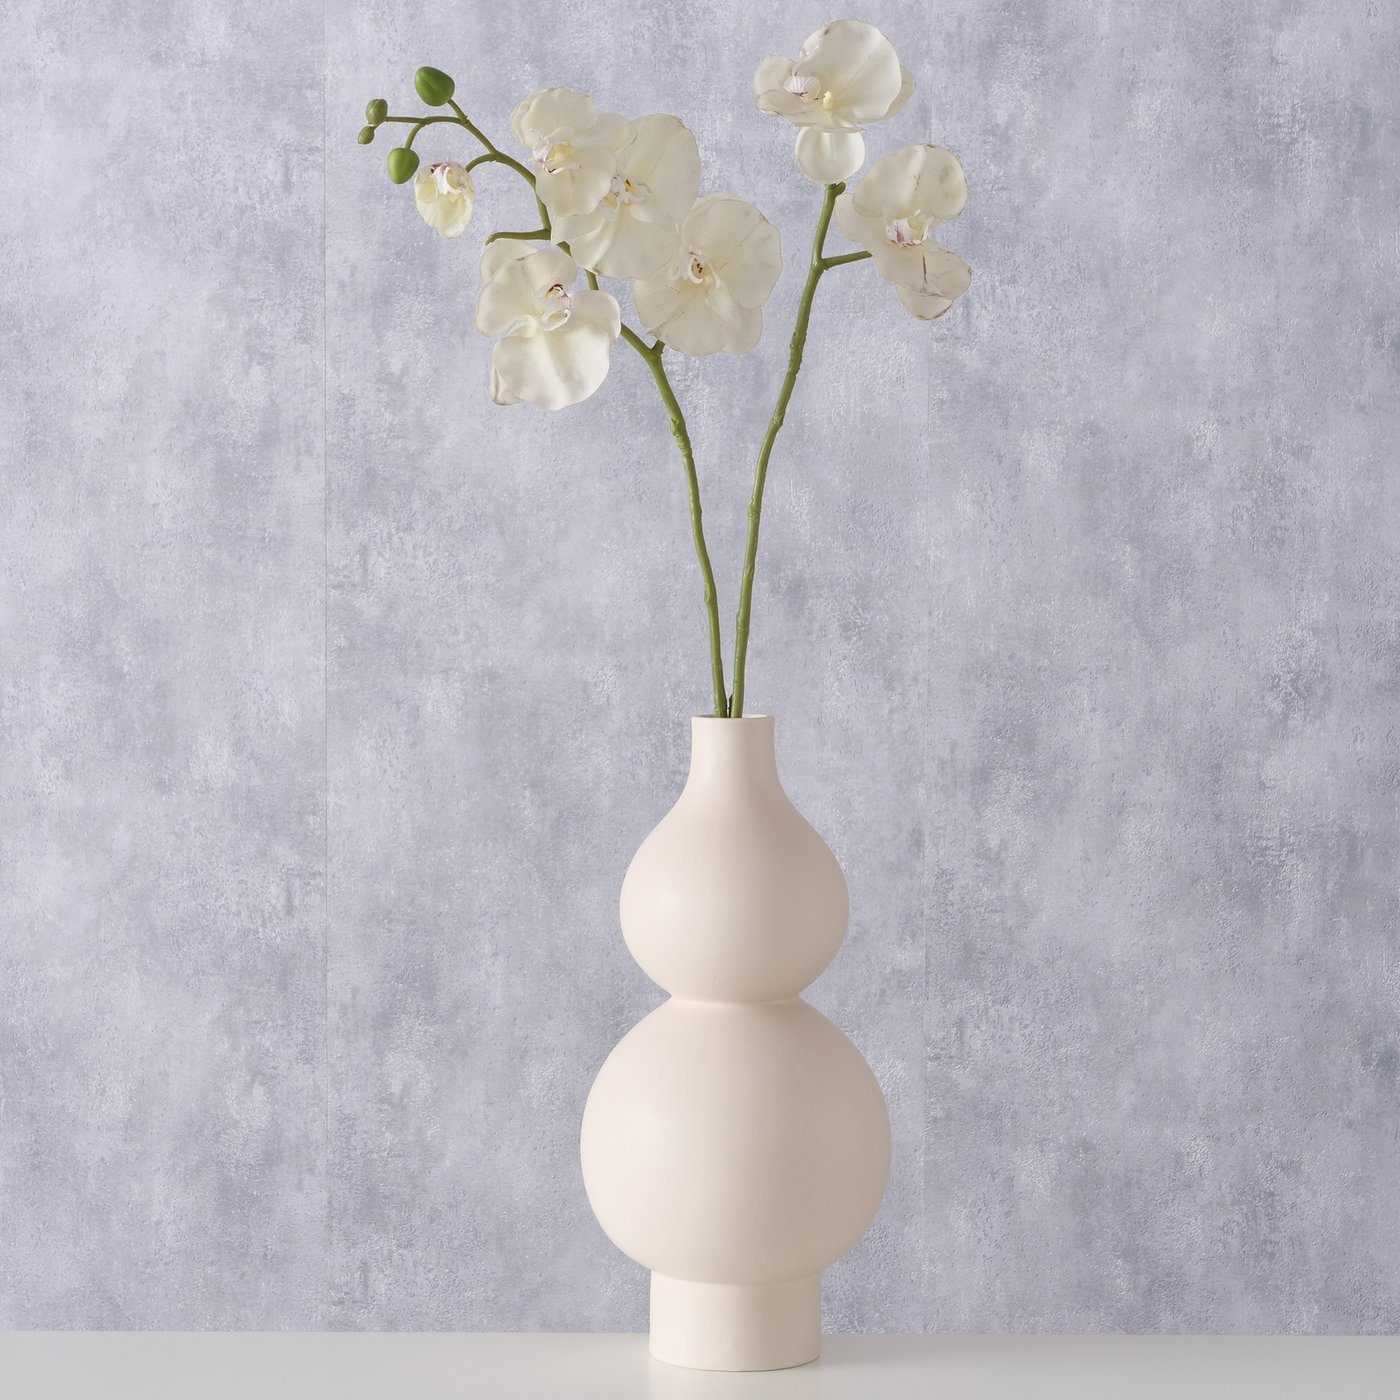 BOLTZE Dekovase "Marovo" aus Keramik in cremeweiß, Vase Blumenvase